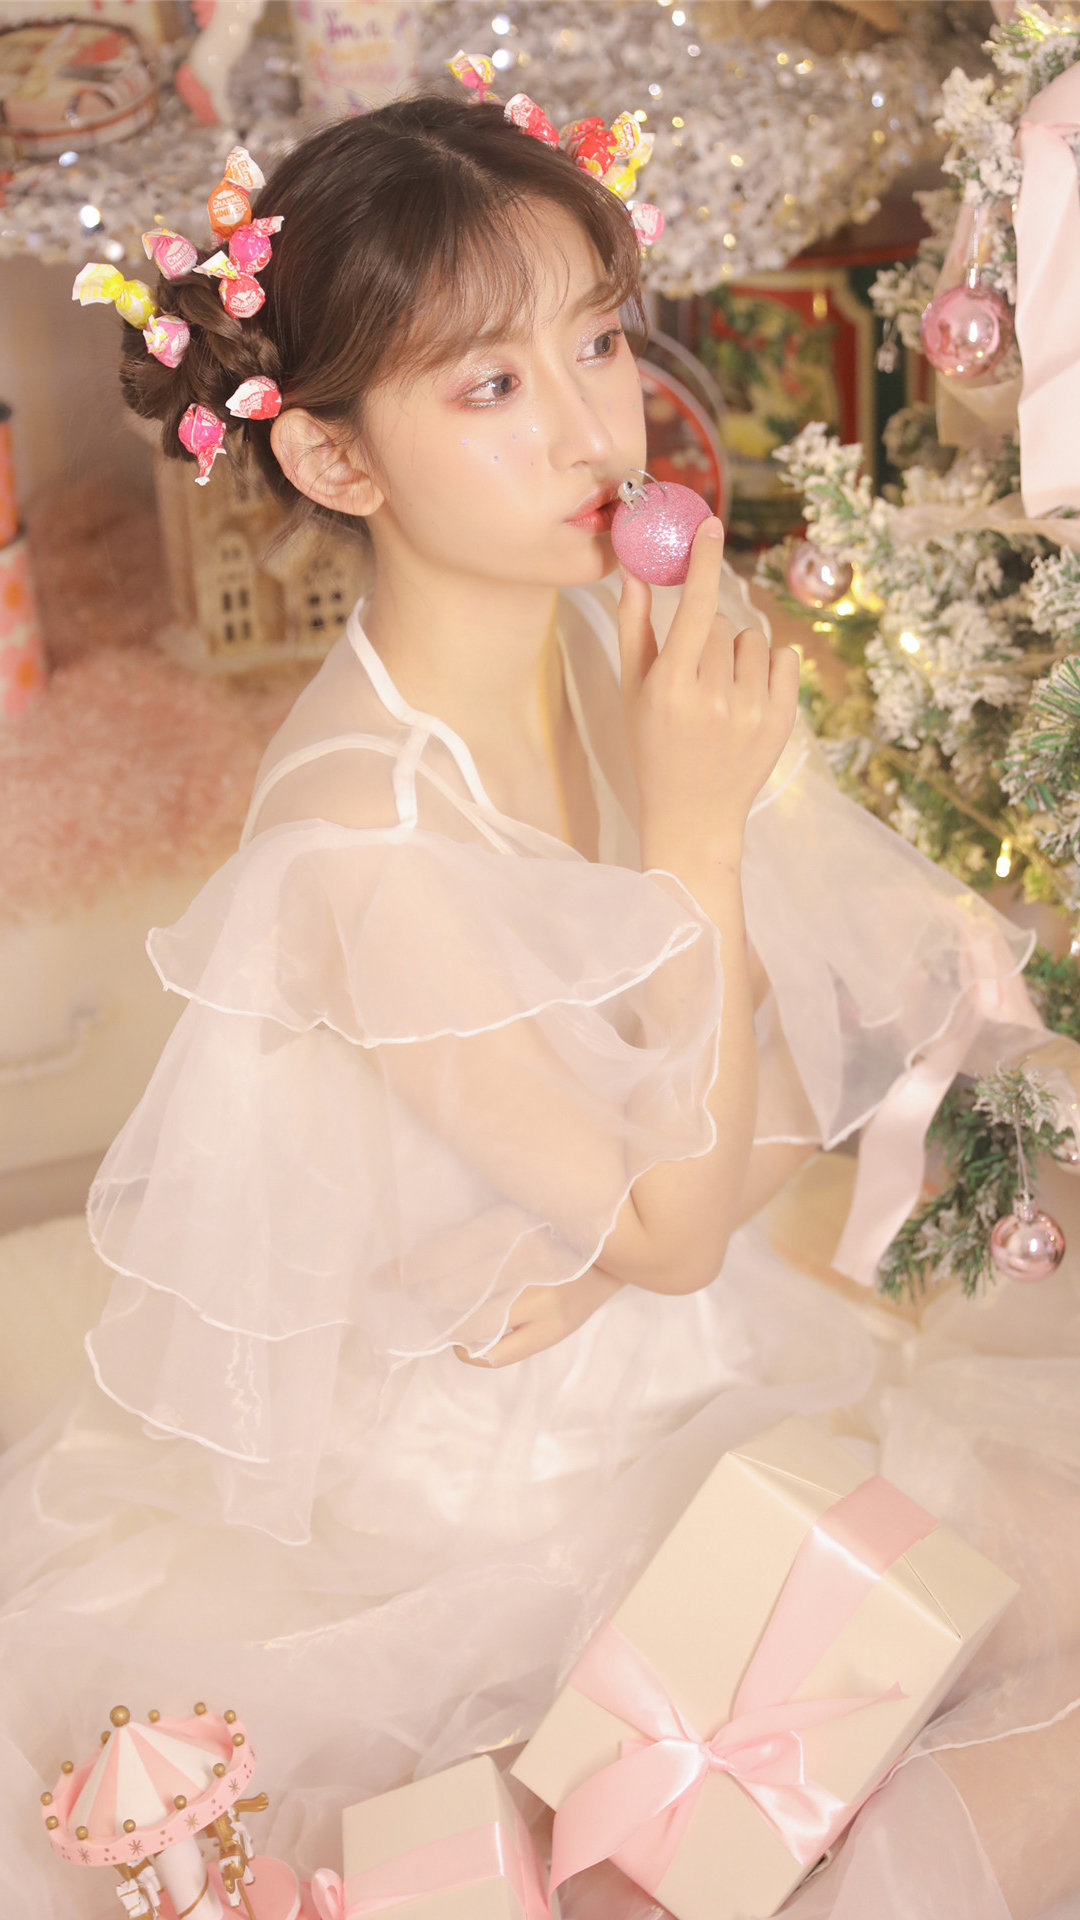 可爱MM白色纱裙温馨甜美艺术写真